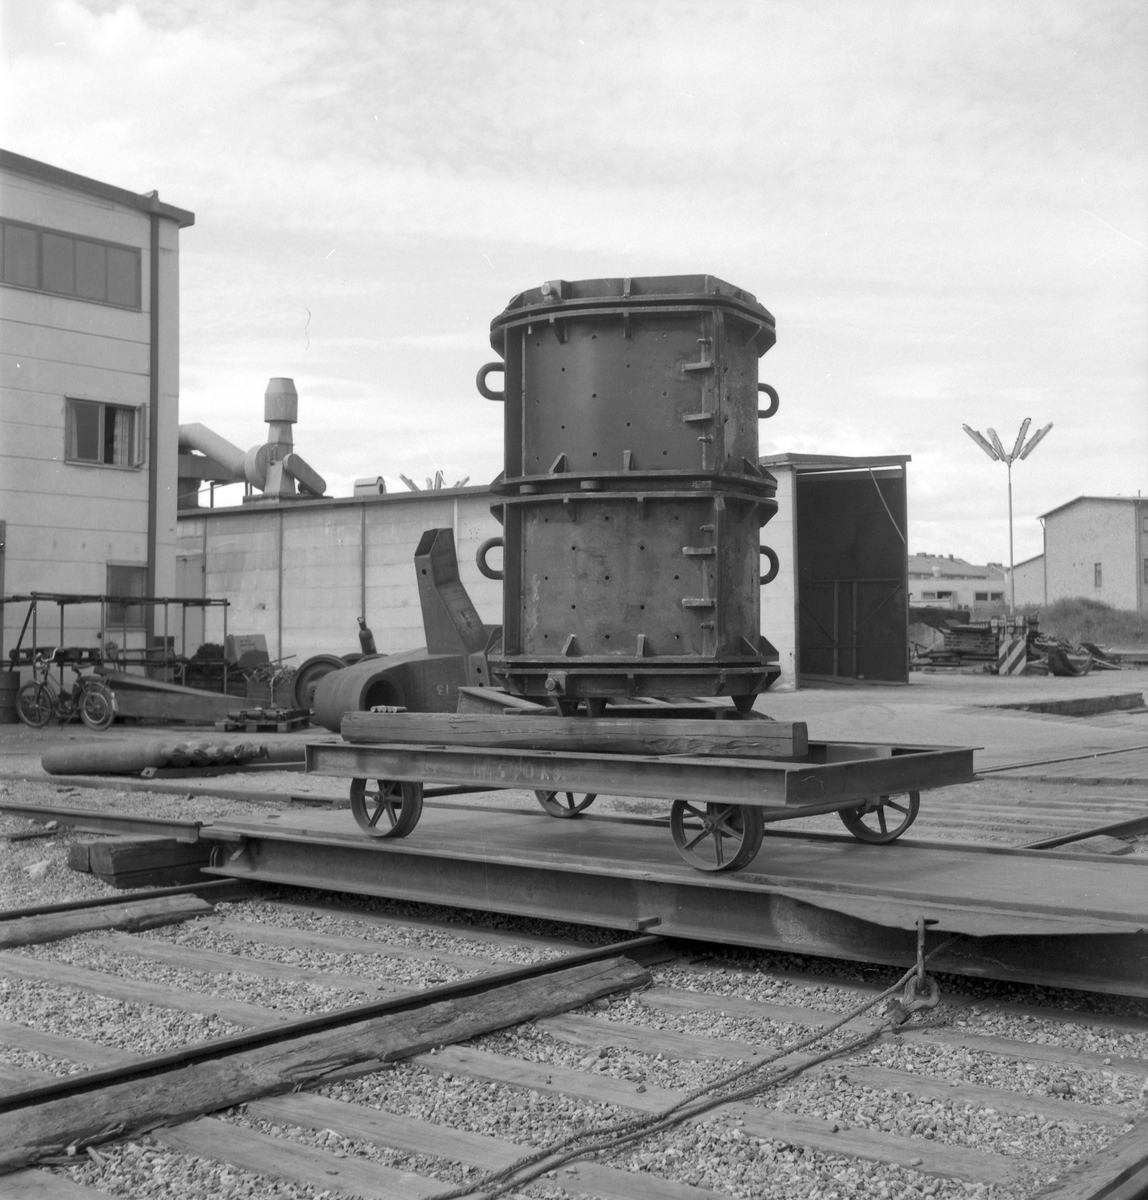 27 juli 1962
Swendsén & Wikström Värmepannefabrik på Brynäs. Företaget köptes upp av Svenska Järnvägsverkstad 1955 Och fick namnet ASJ-PARCA.

